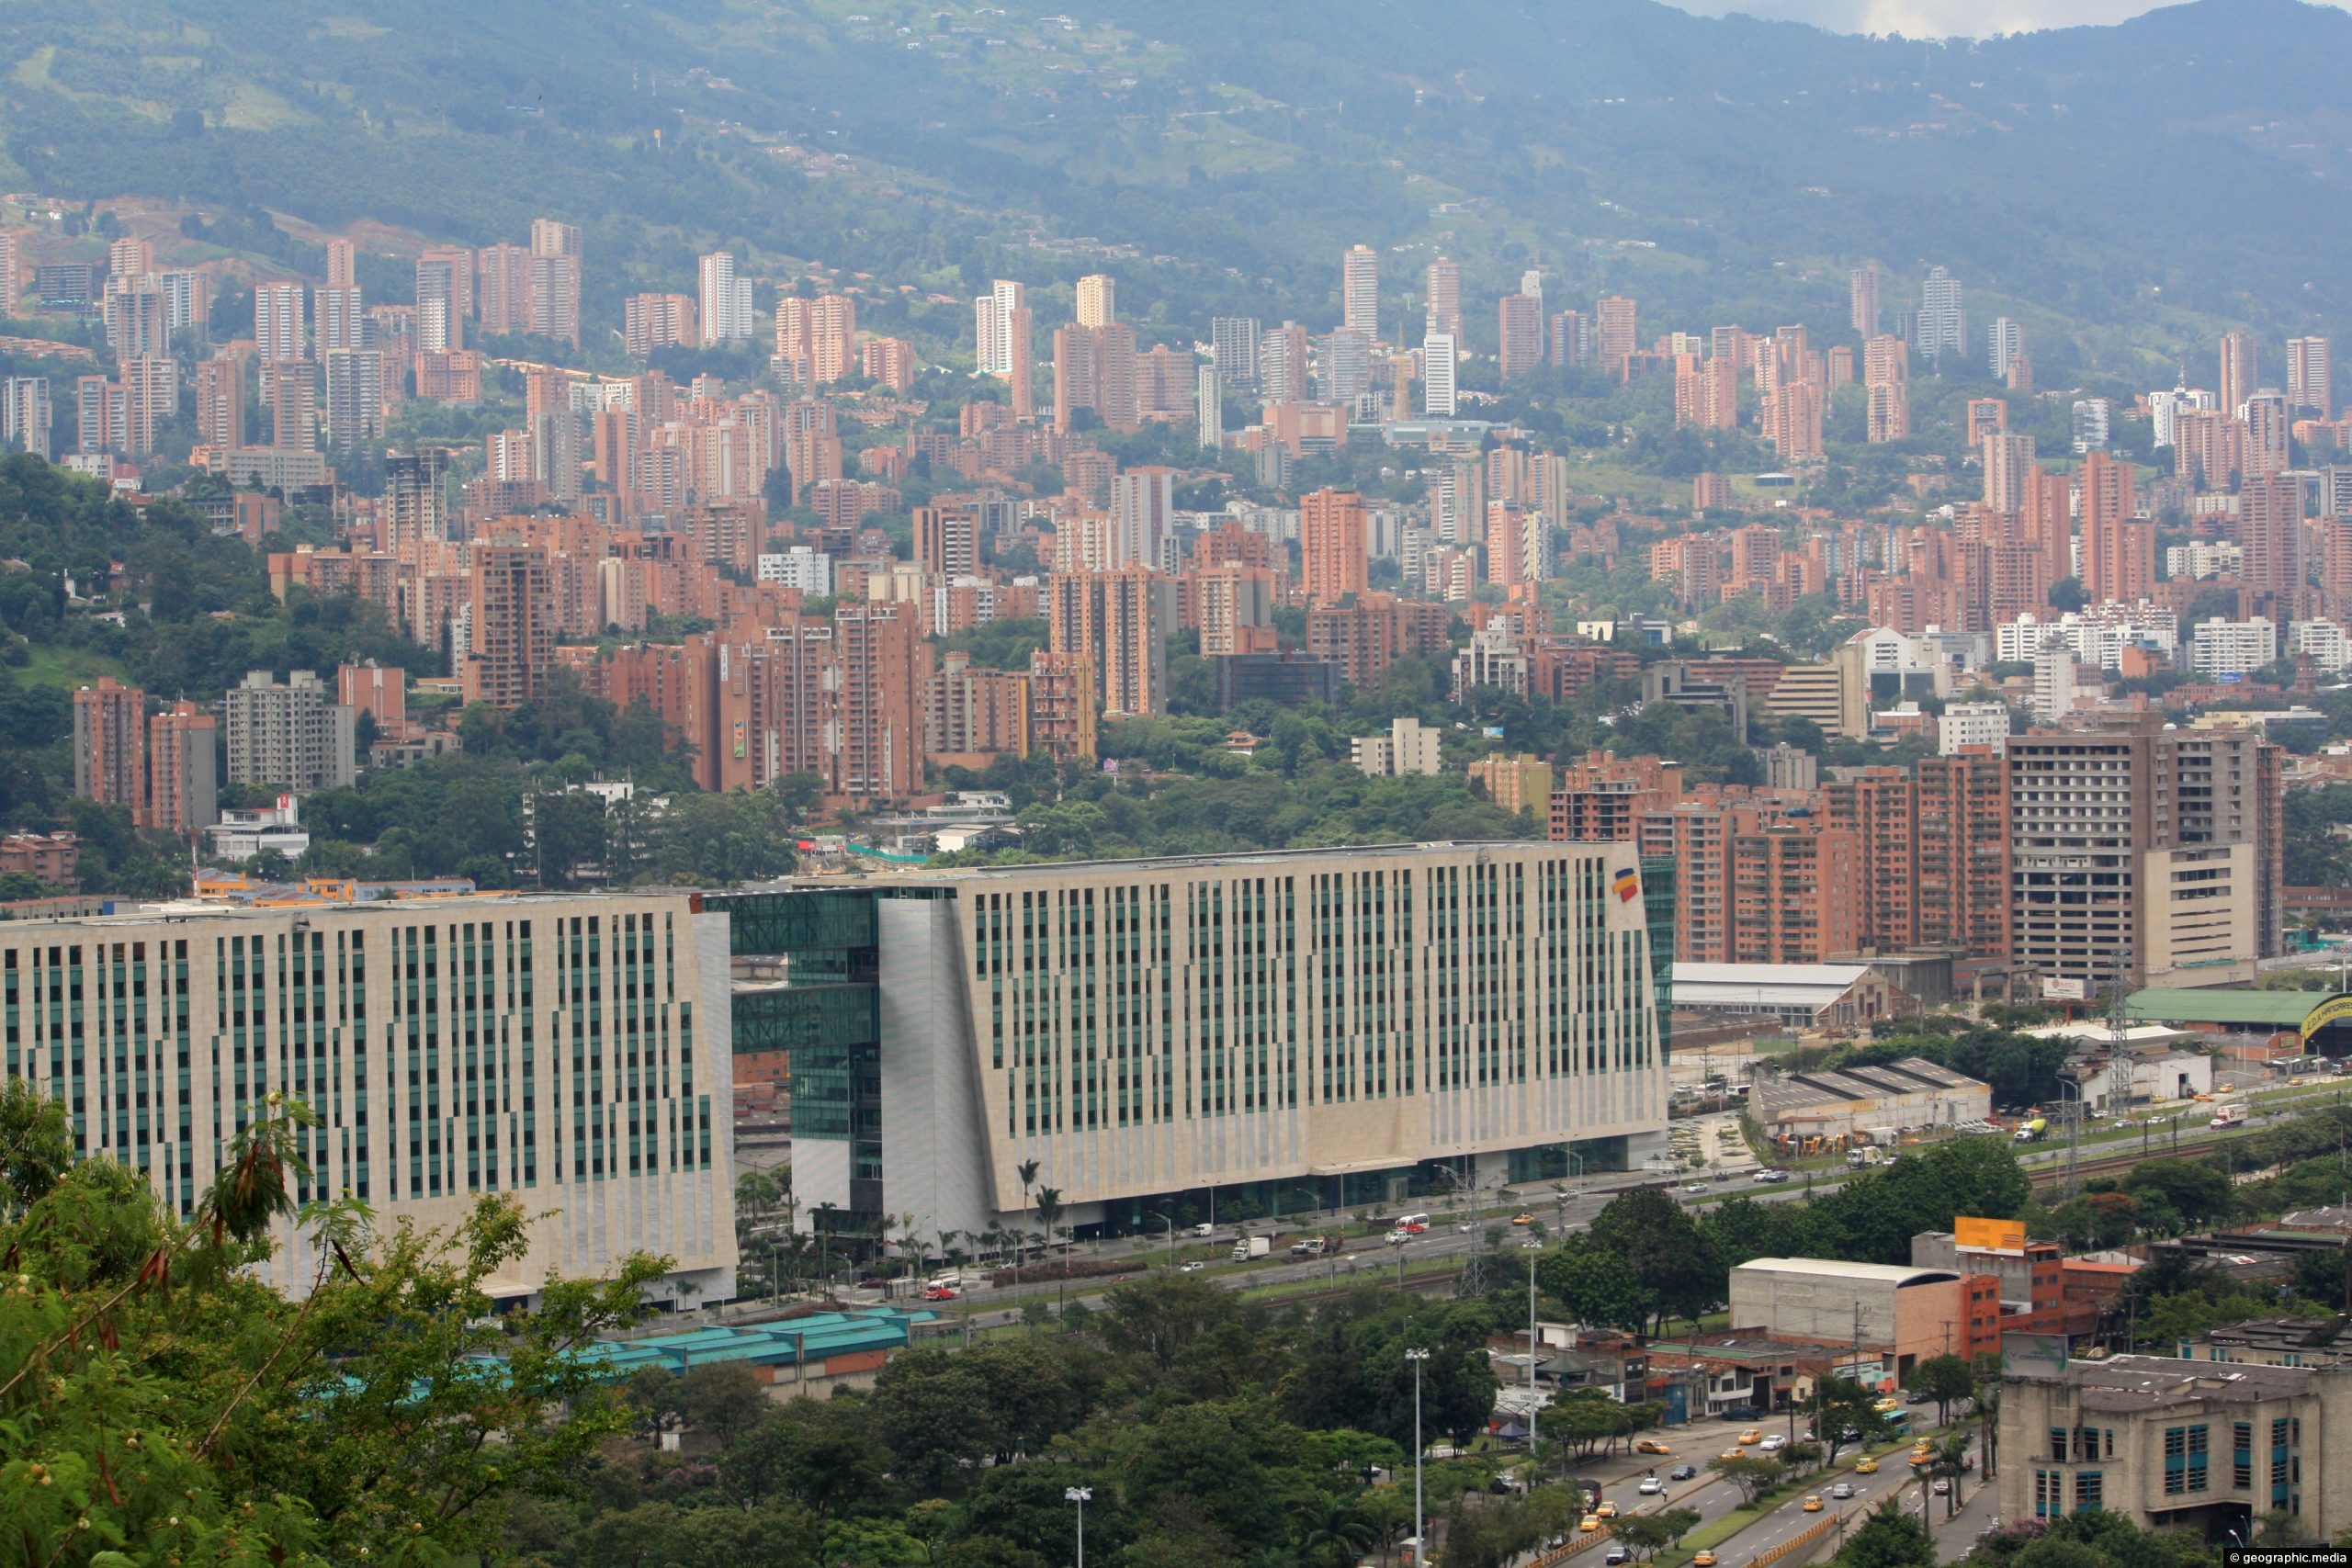 El Poblado in Medellin